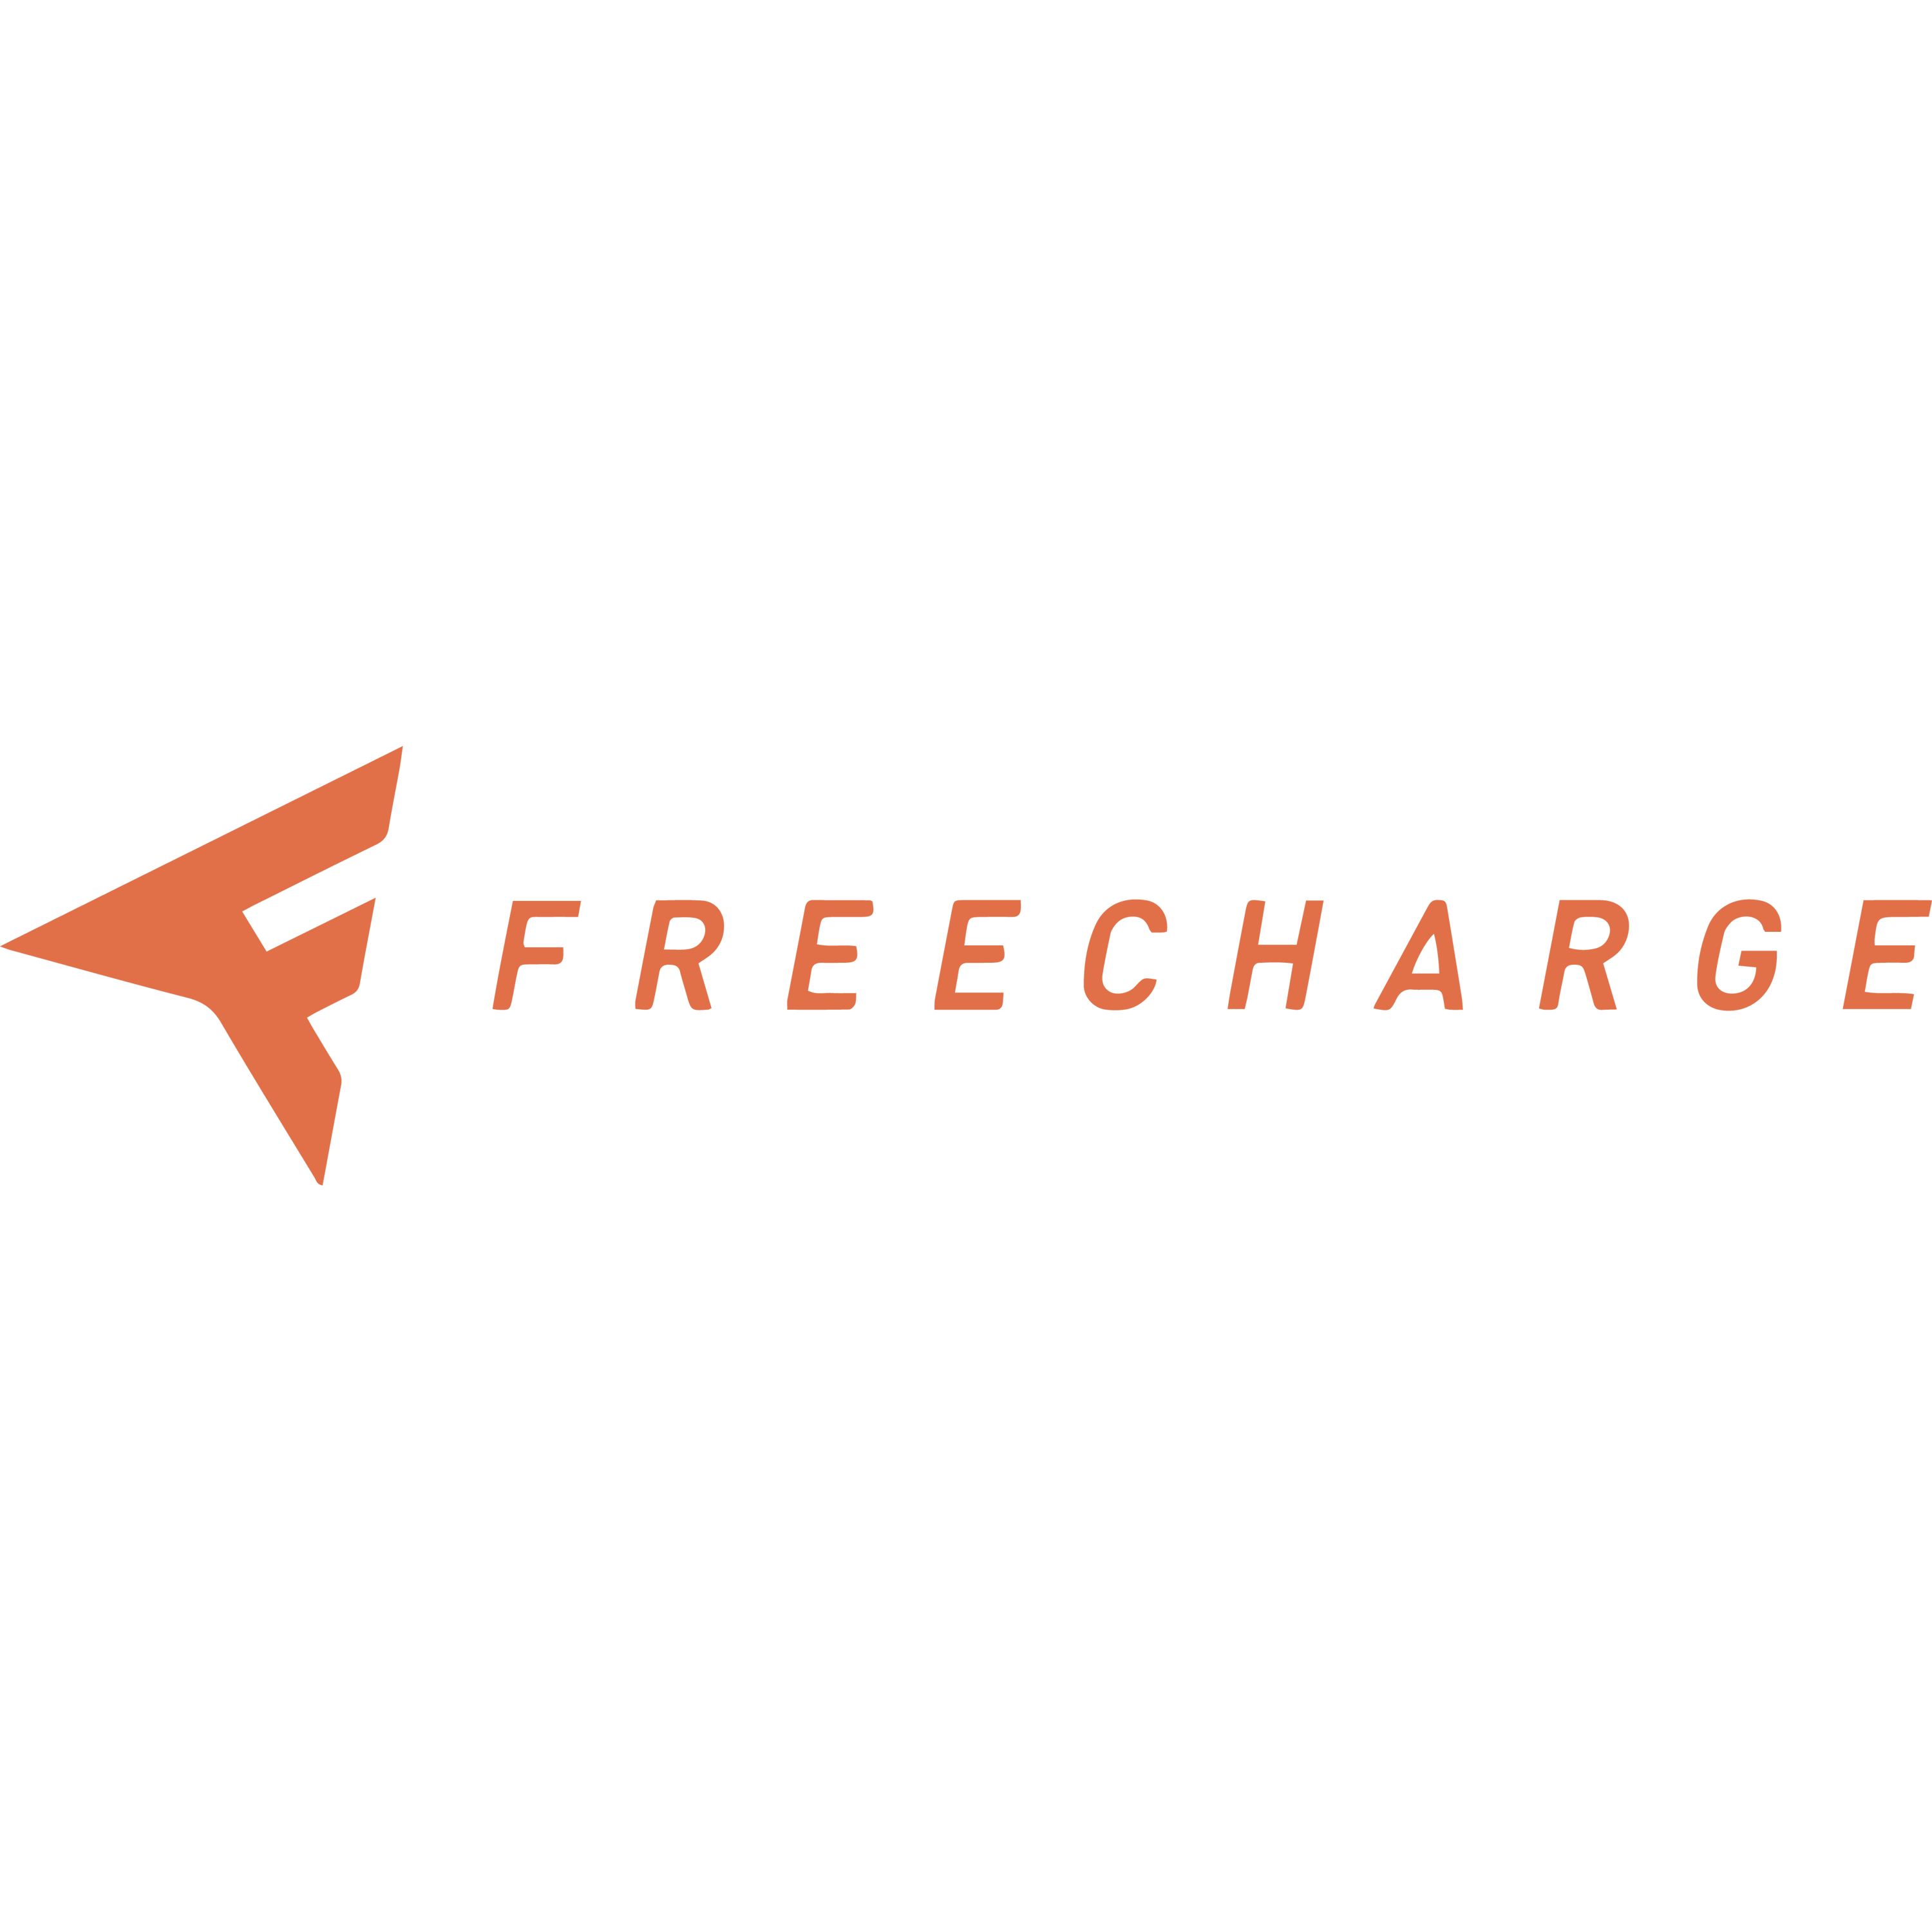 Freecharge Logo Transparent Image